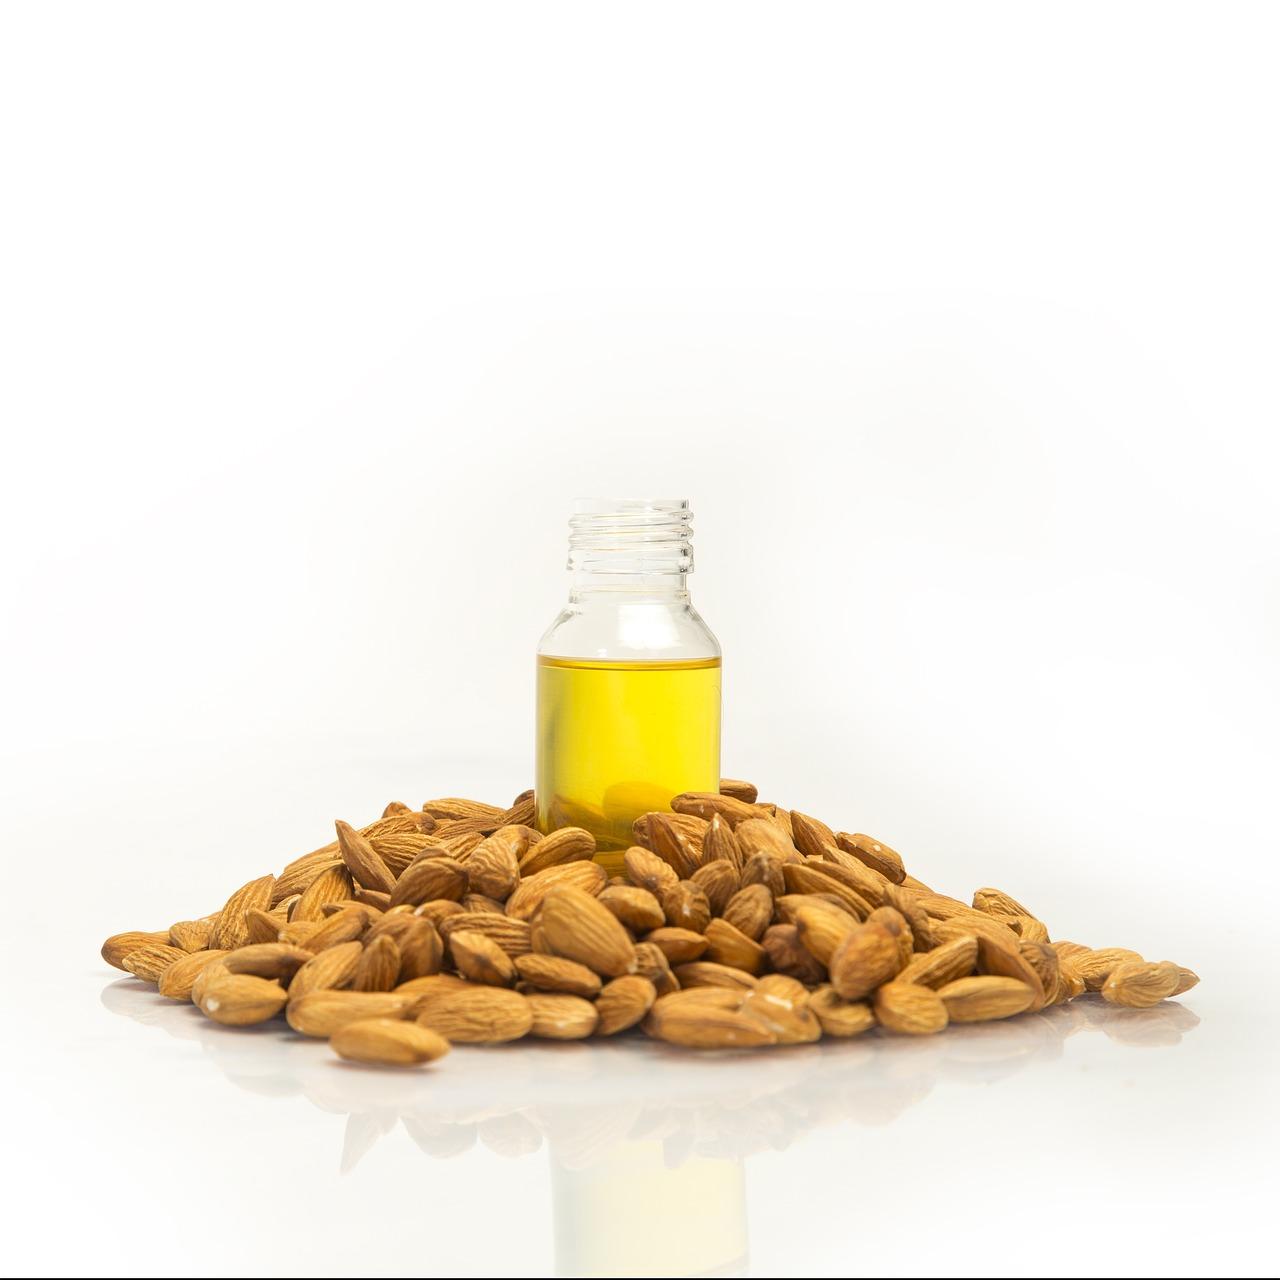 Does almond oil make skin darker? 